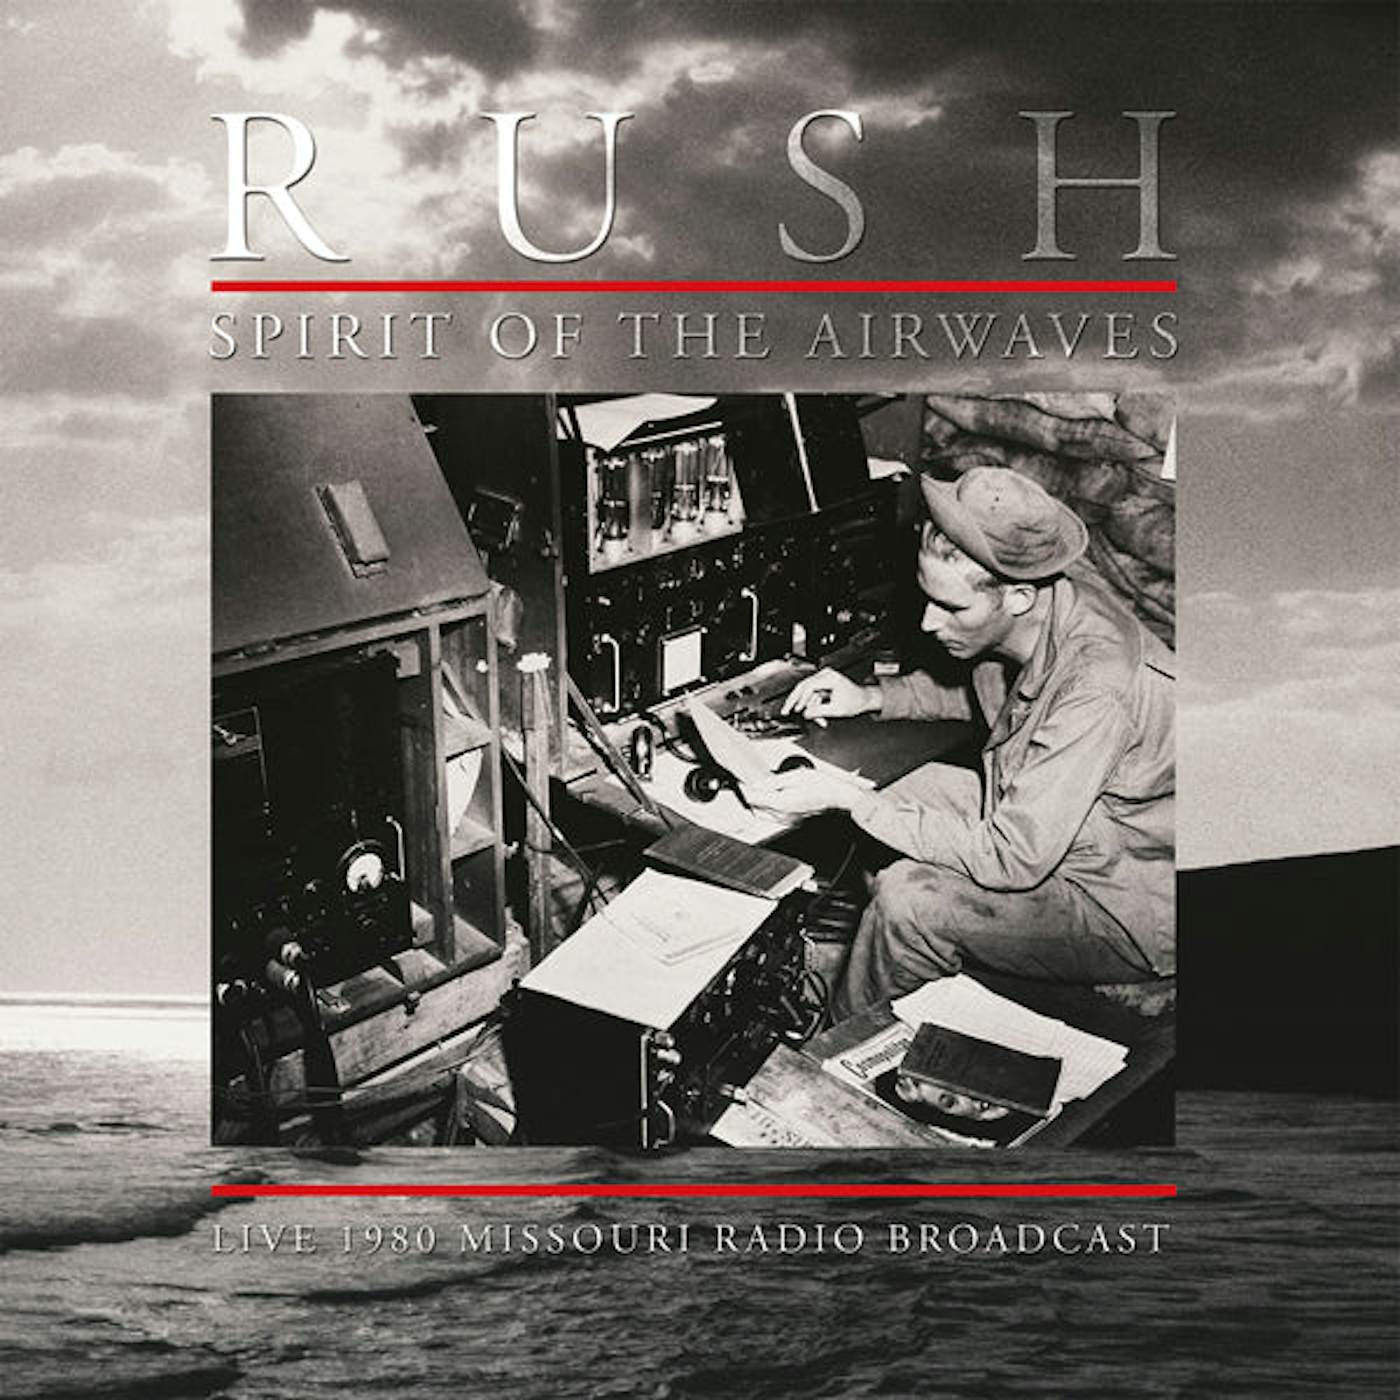 Rush LP - Spirt Of The Airwaves (Blue Vinyl)